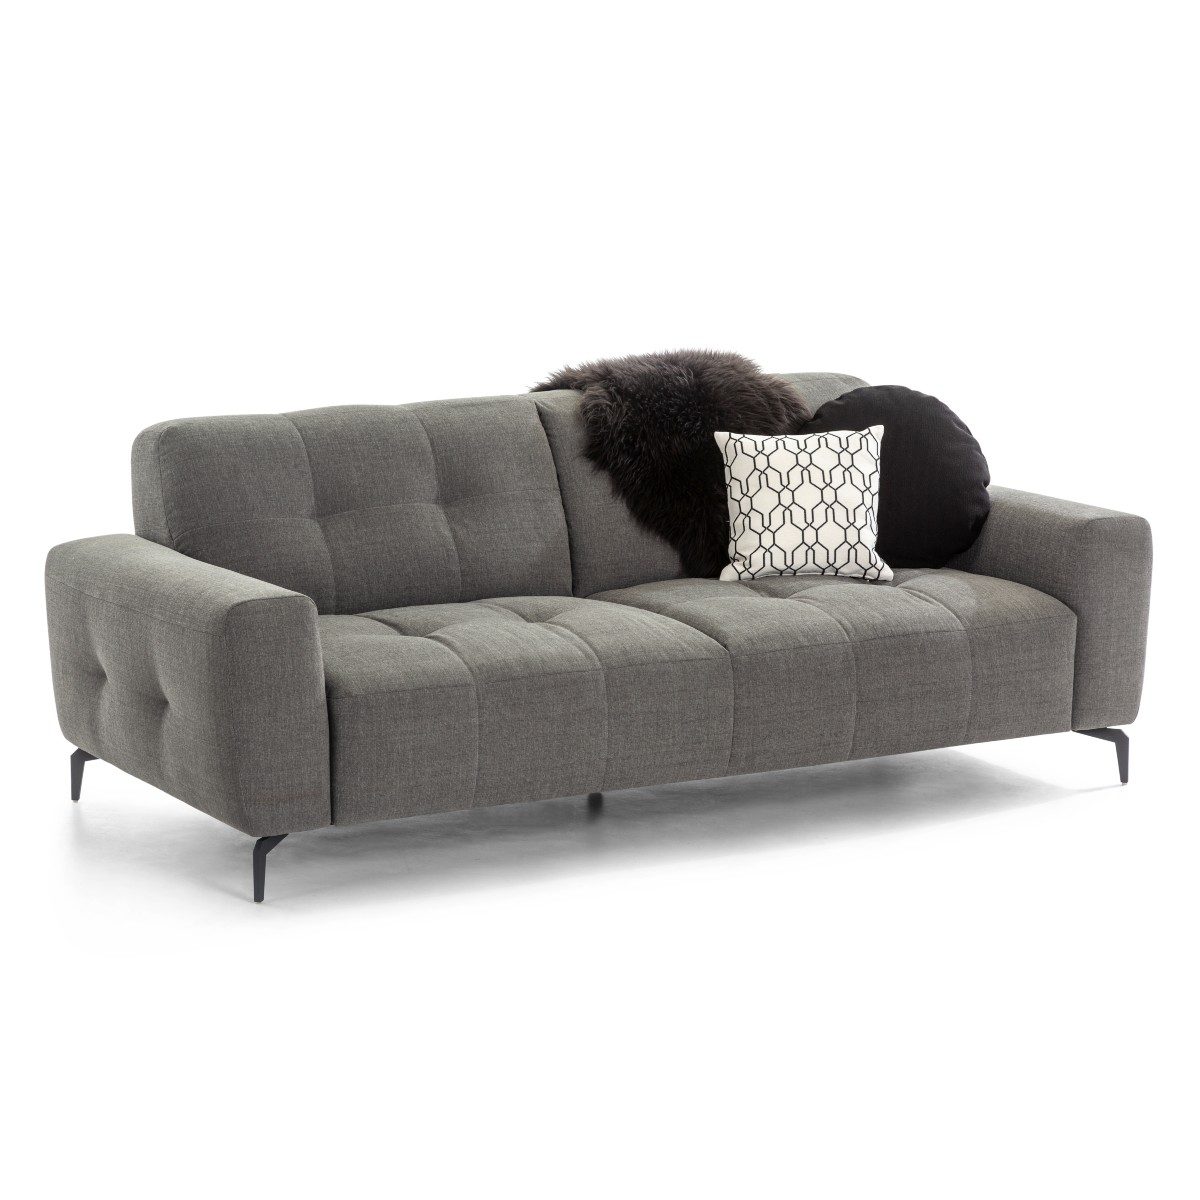 Willi Schillig Wilson 3-Sitzer Sofa mit Textilbezug in Schwarz-Weiß und Metallfüßen in Schwarz als Freisteller.